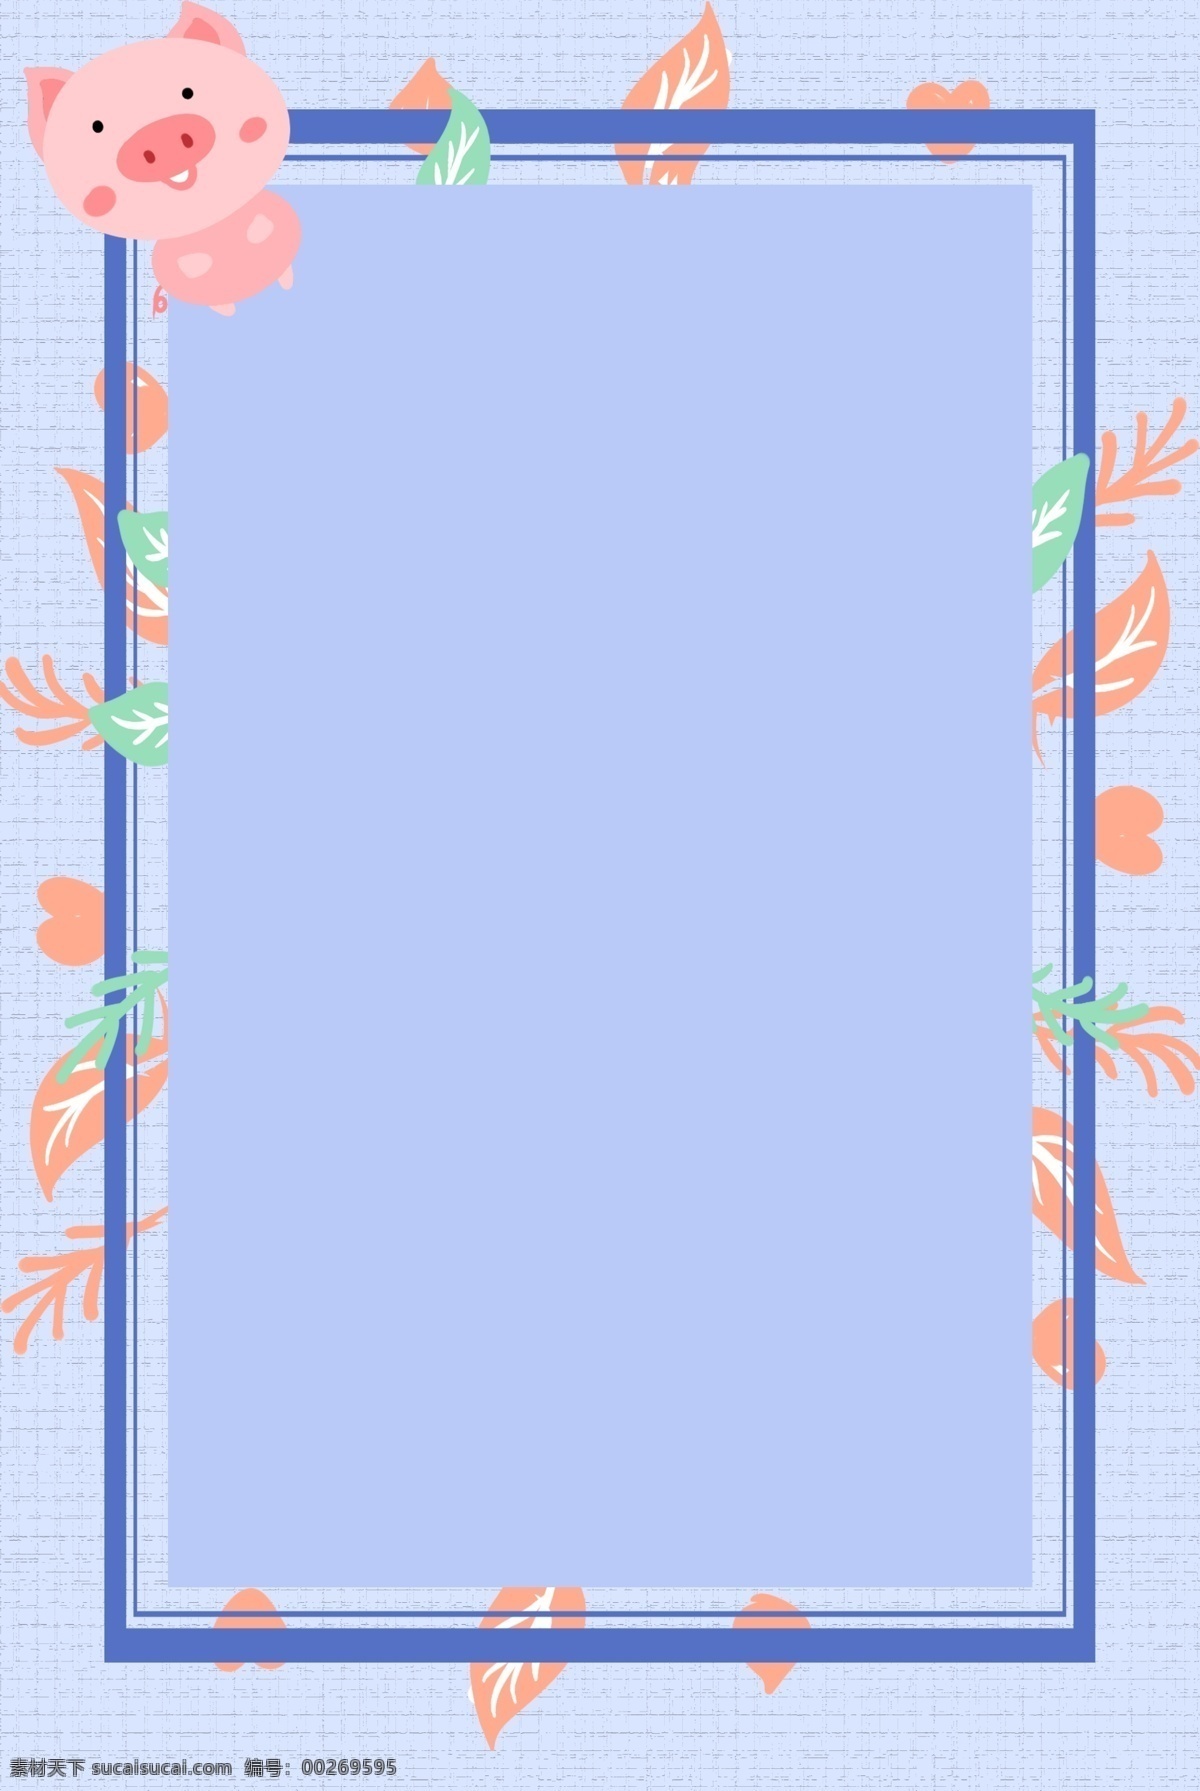 可爱 紫色 边框 背景 小猪 花朵 叶子 卡通 简约 蓝色 花朵边框